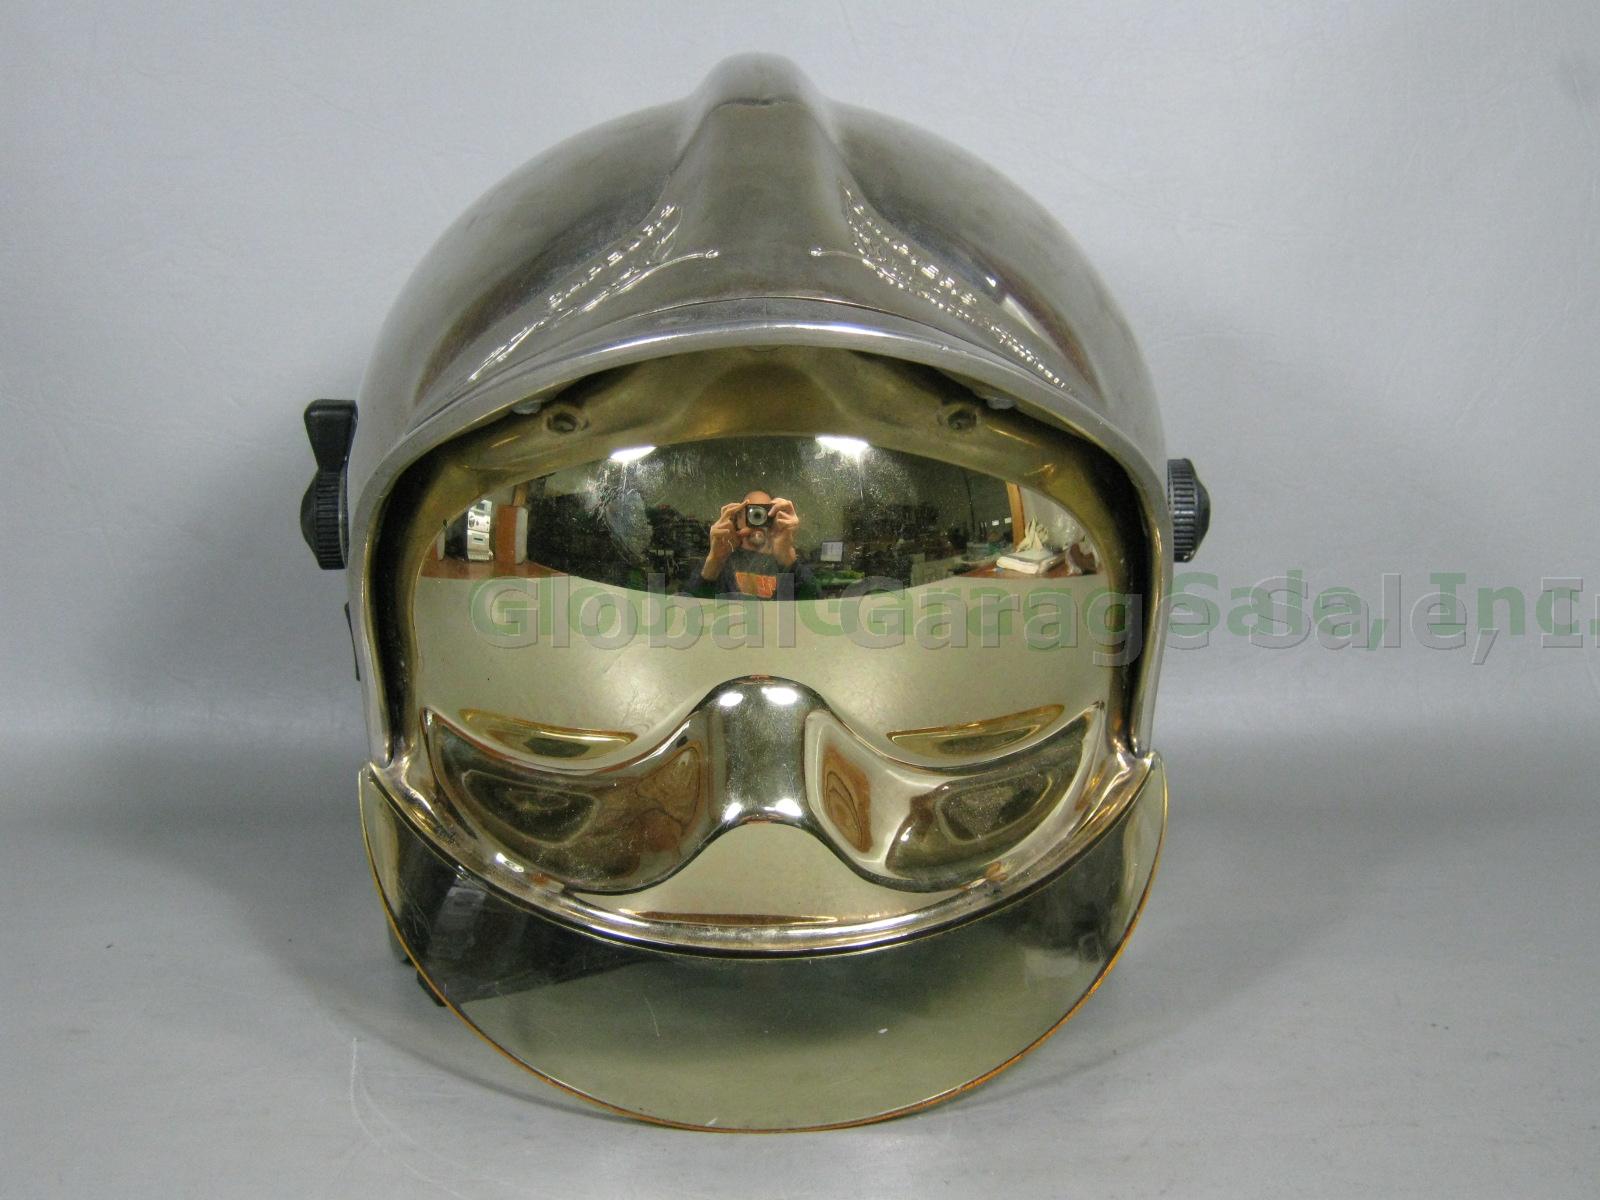 Gallet CGF French Fire Fireman Firefighter Helmet Mirrored Visor Sapeurs Pompier